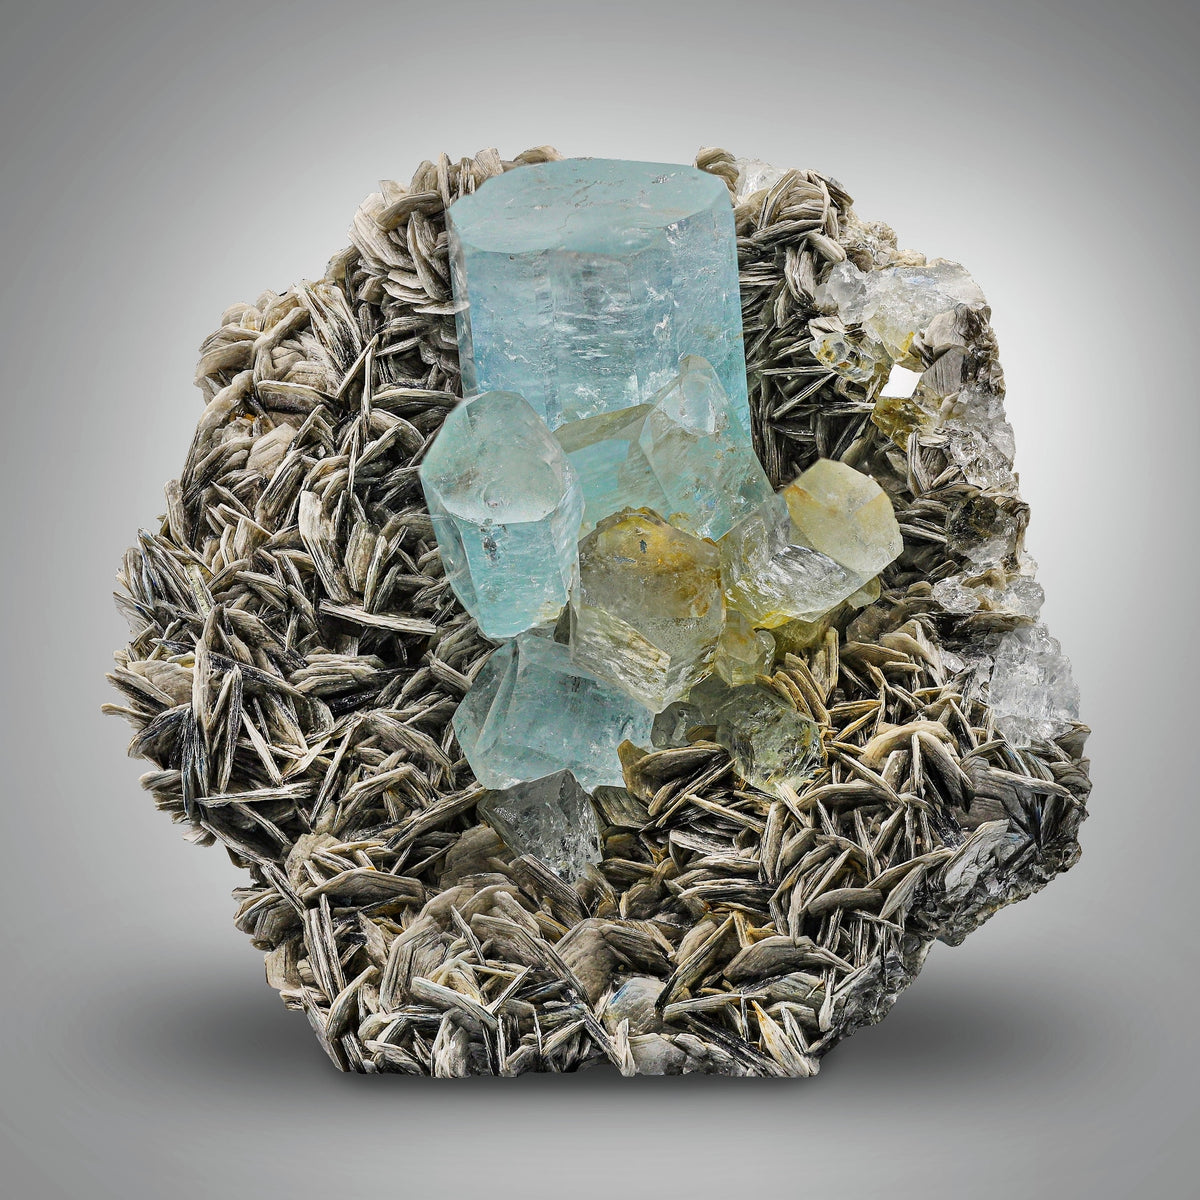 Unique Gem Specimen Aquamarine Crystal Cluster on Muscovite Matrix from Pakistan